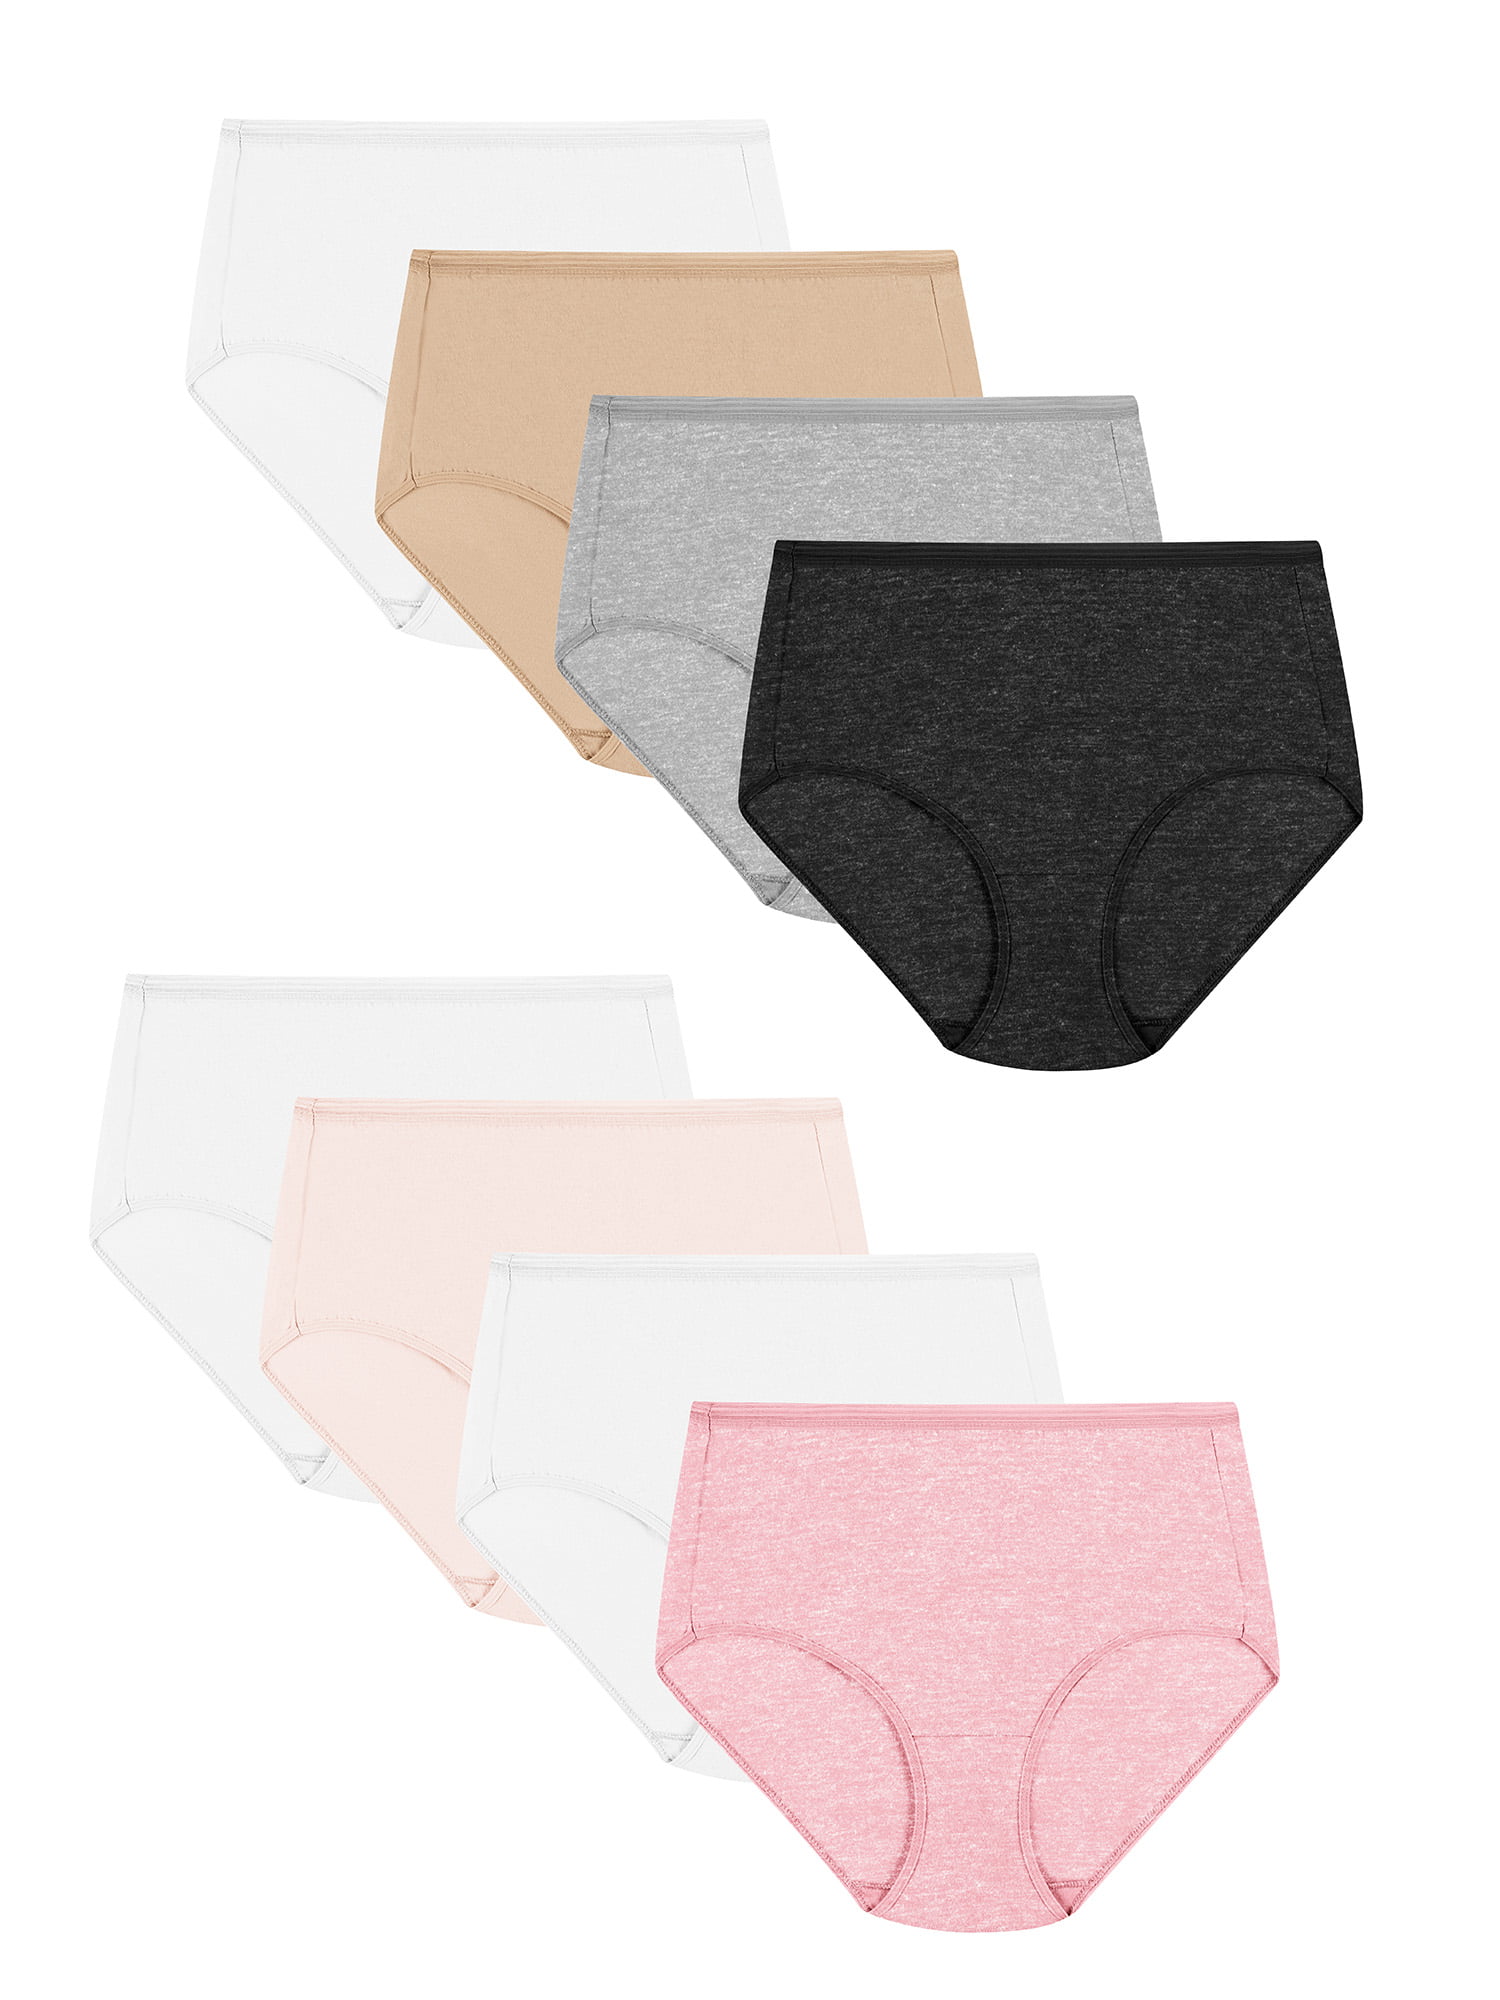 Hanes Women's Super Value Bonus Signature Breathe Cotton Brief Underwear,  6+2 Bonus Pack